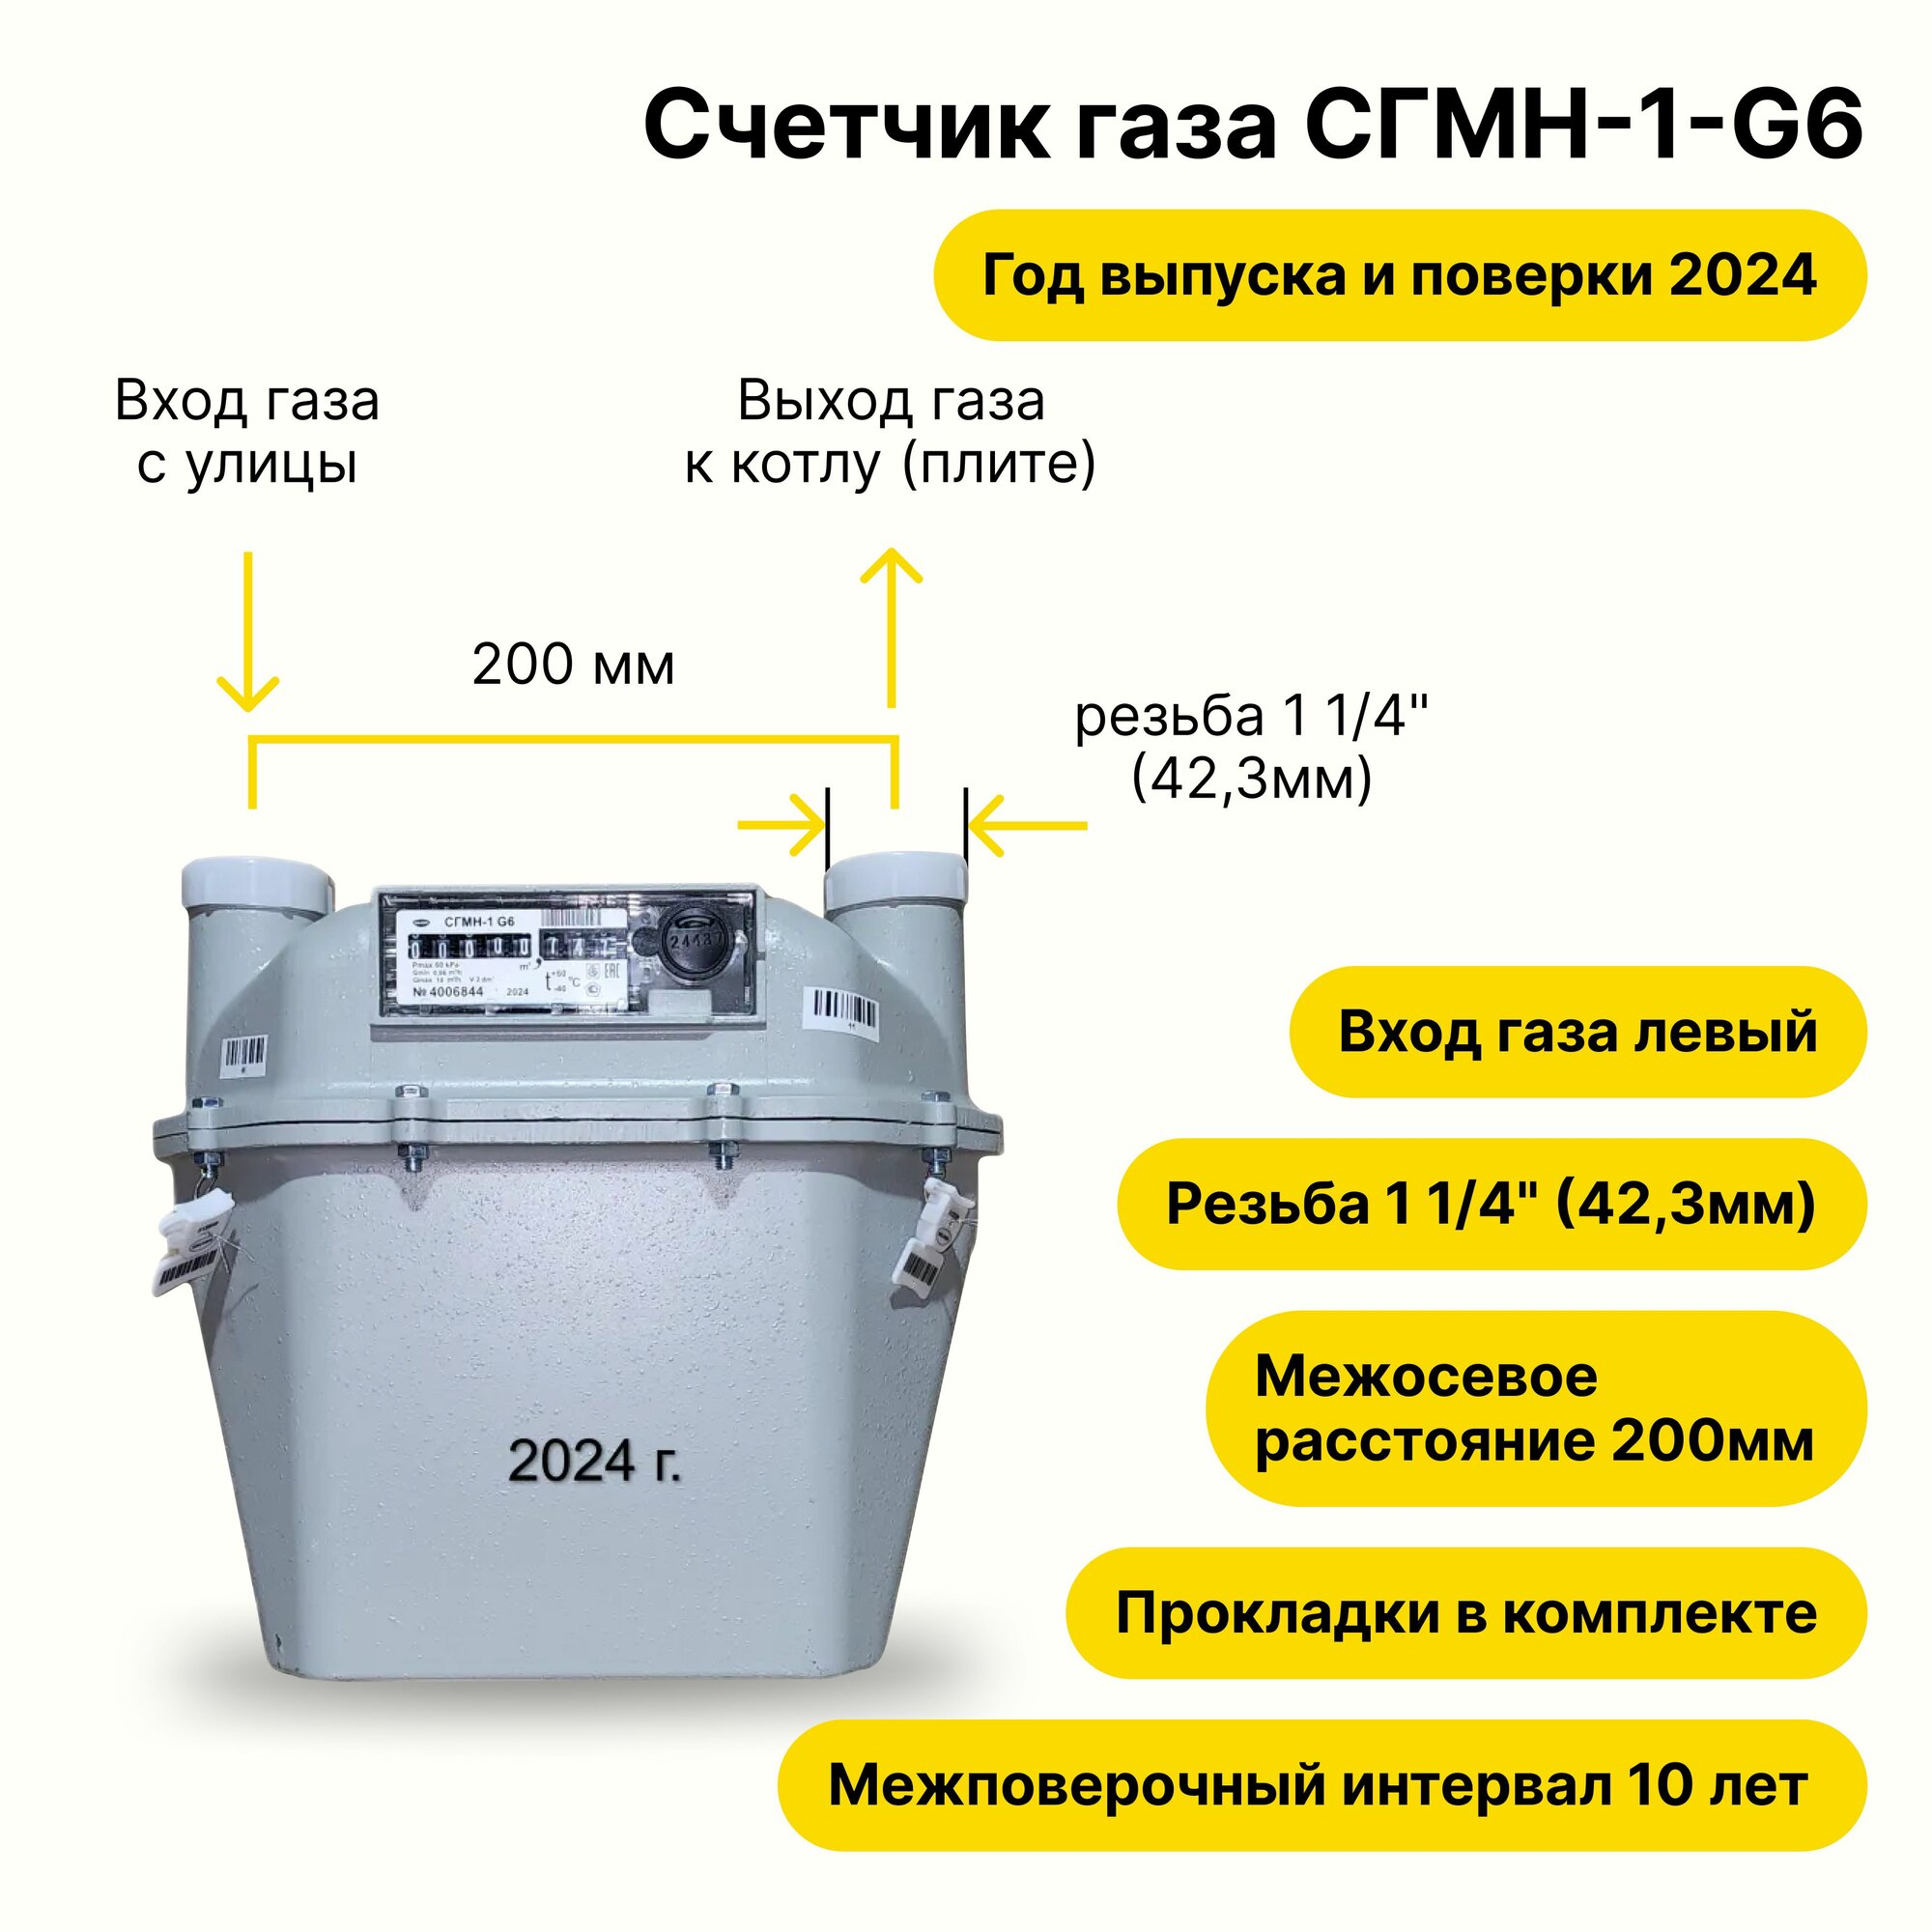 СГМН-1-G6 (вход газа левый -->, 200мм, резьба 1 1/4", прокладки В комплекте) 2024 года выпуска и поверки